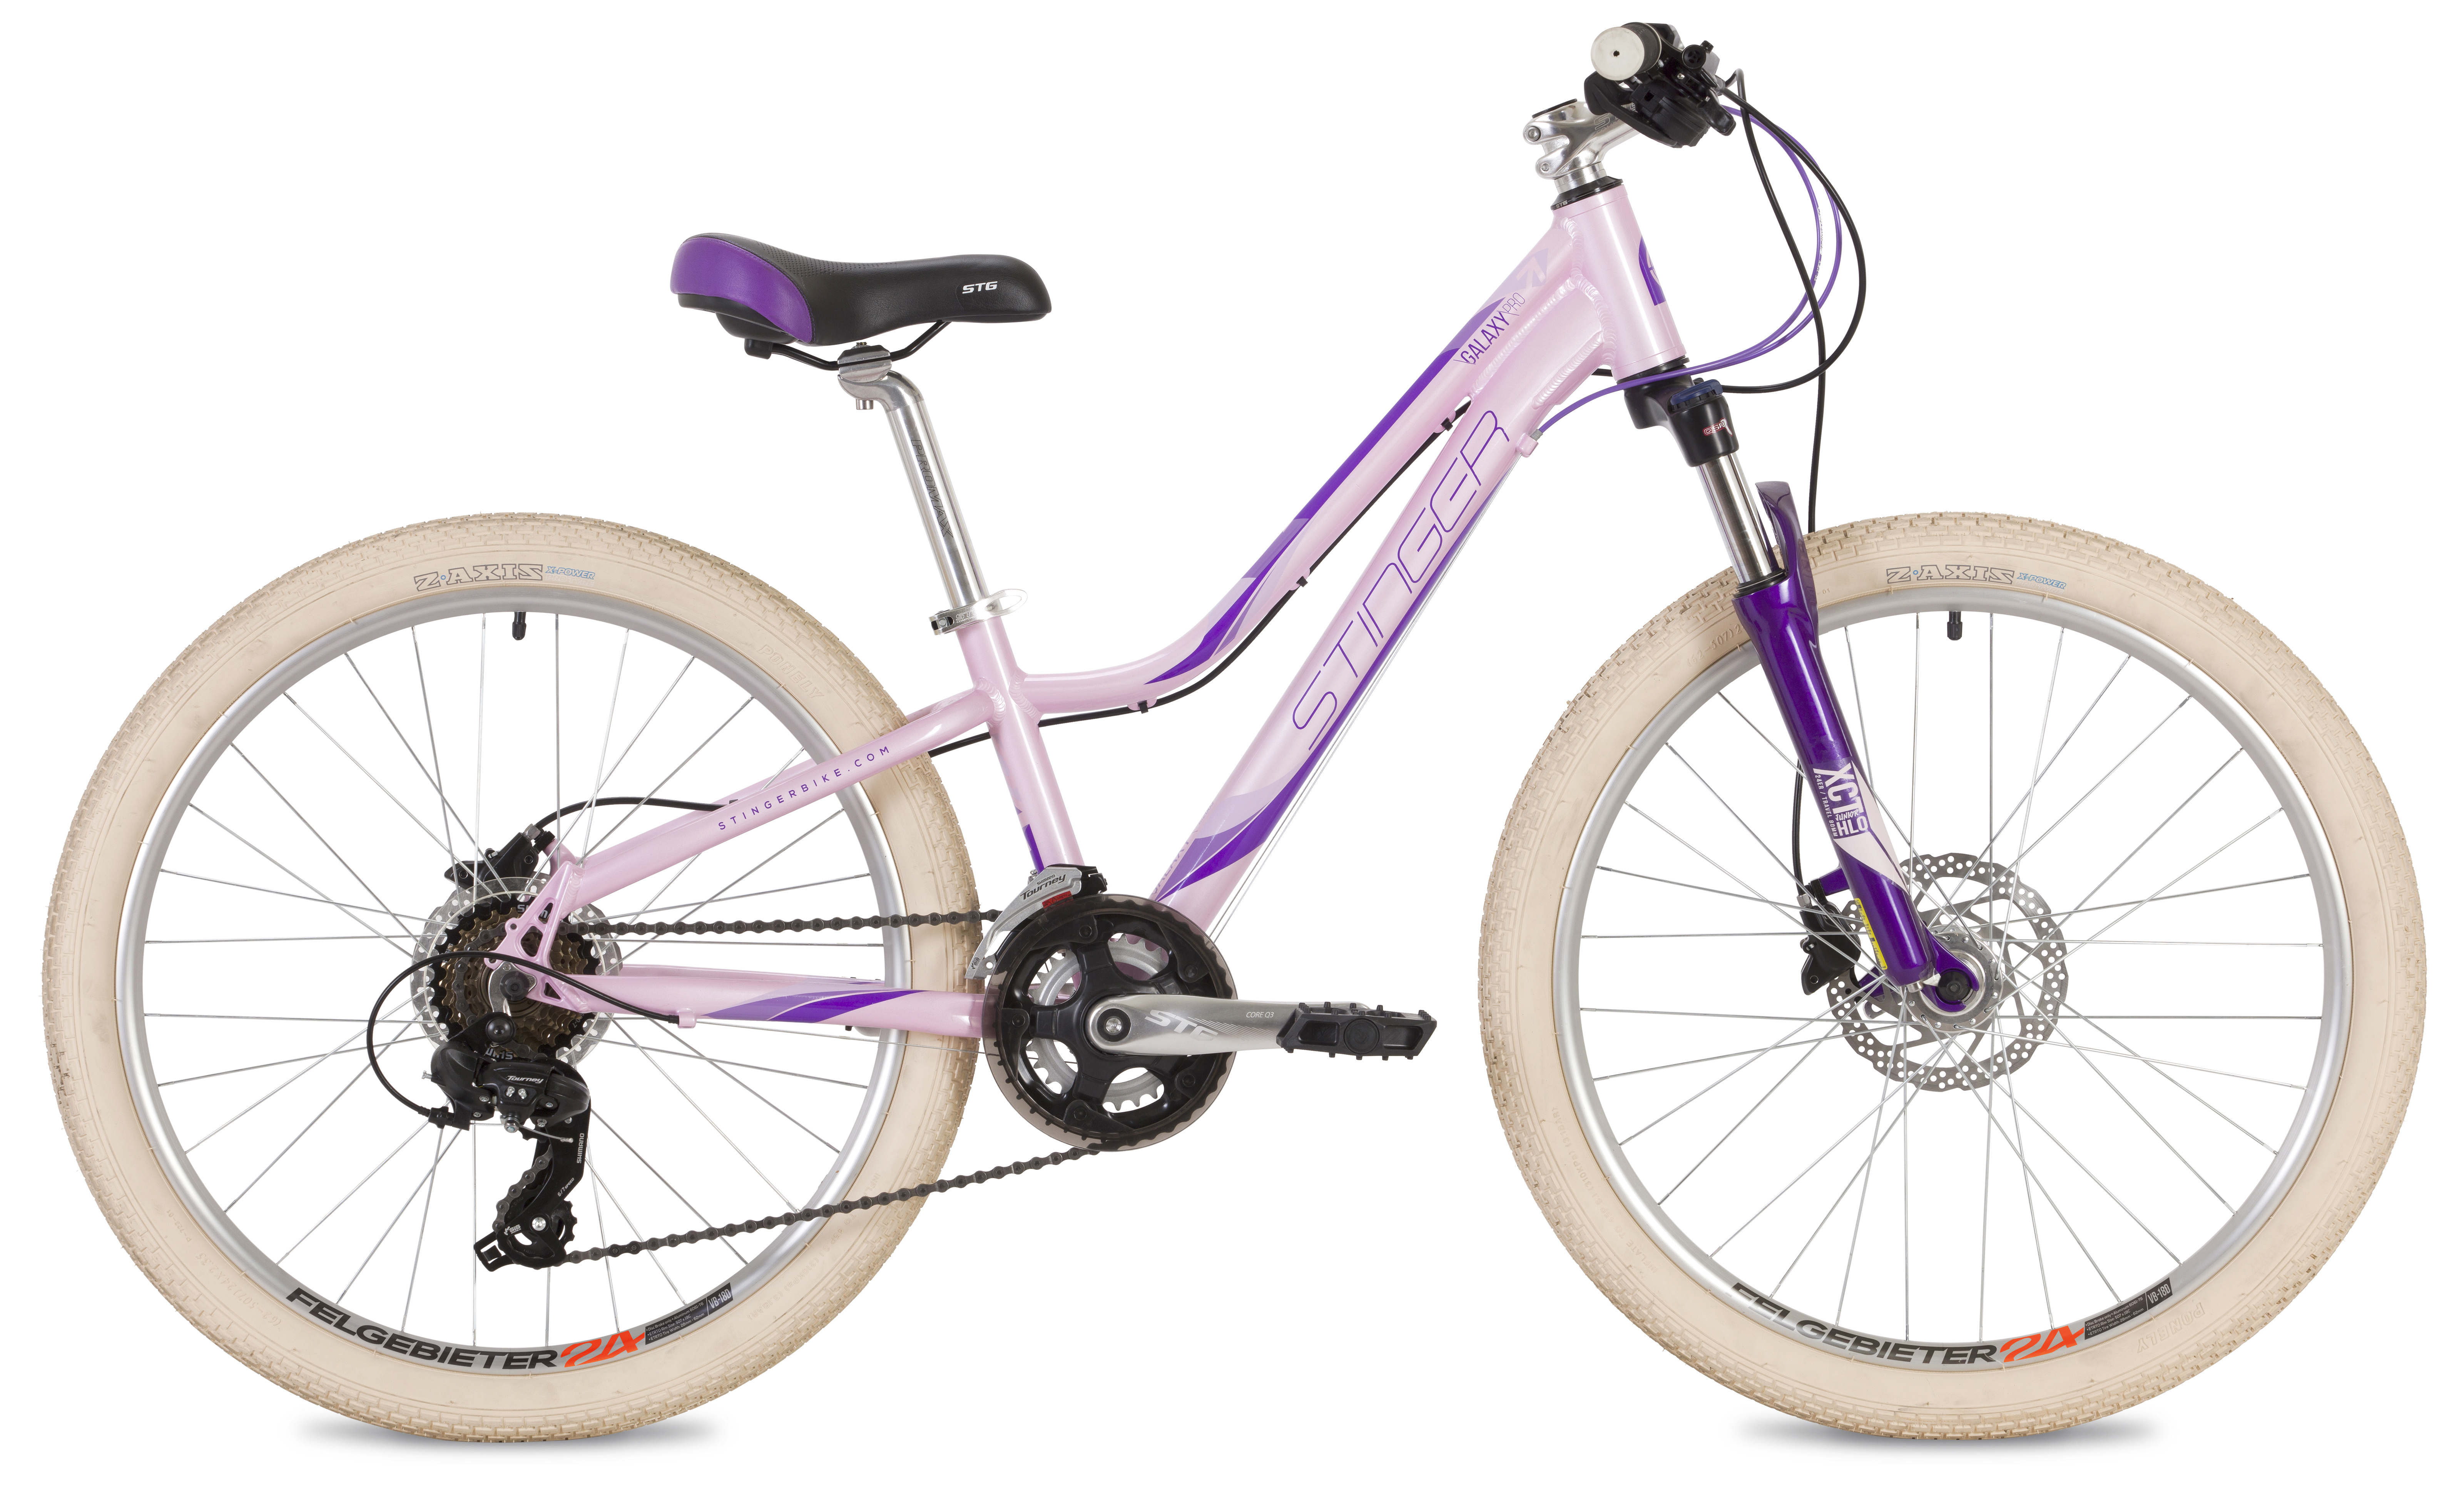  Отзывы о Подростковом велосипеде Stinger Galaxy Pro 24 2019